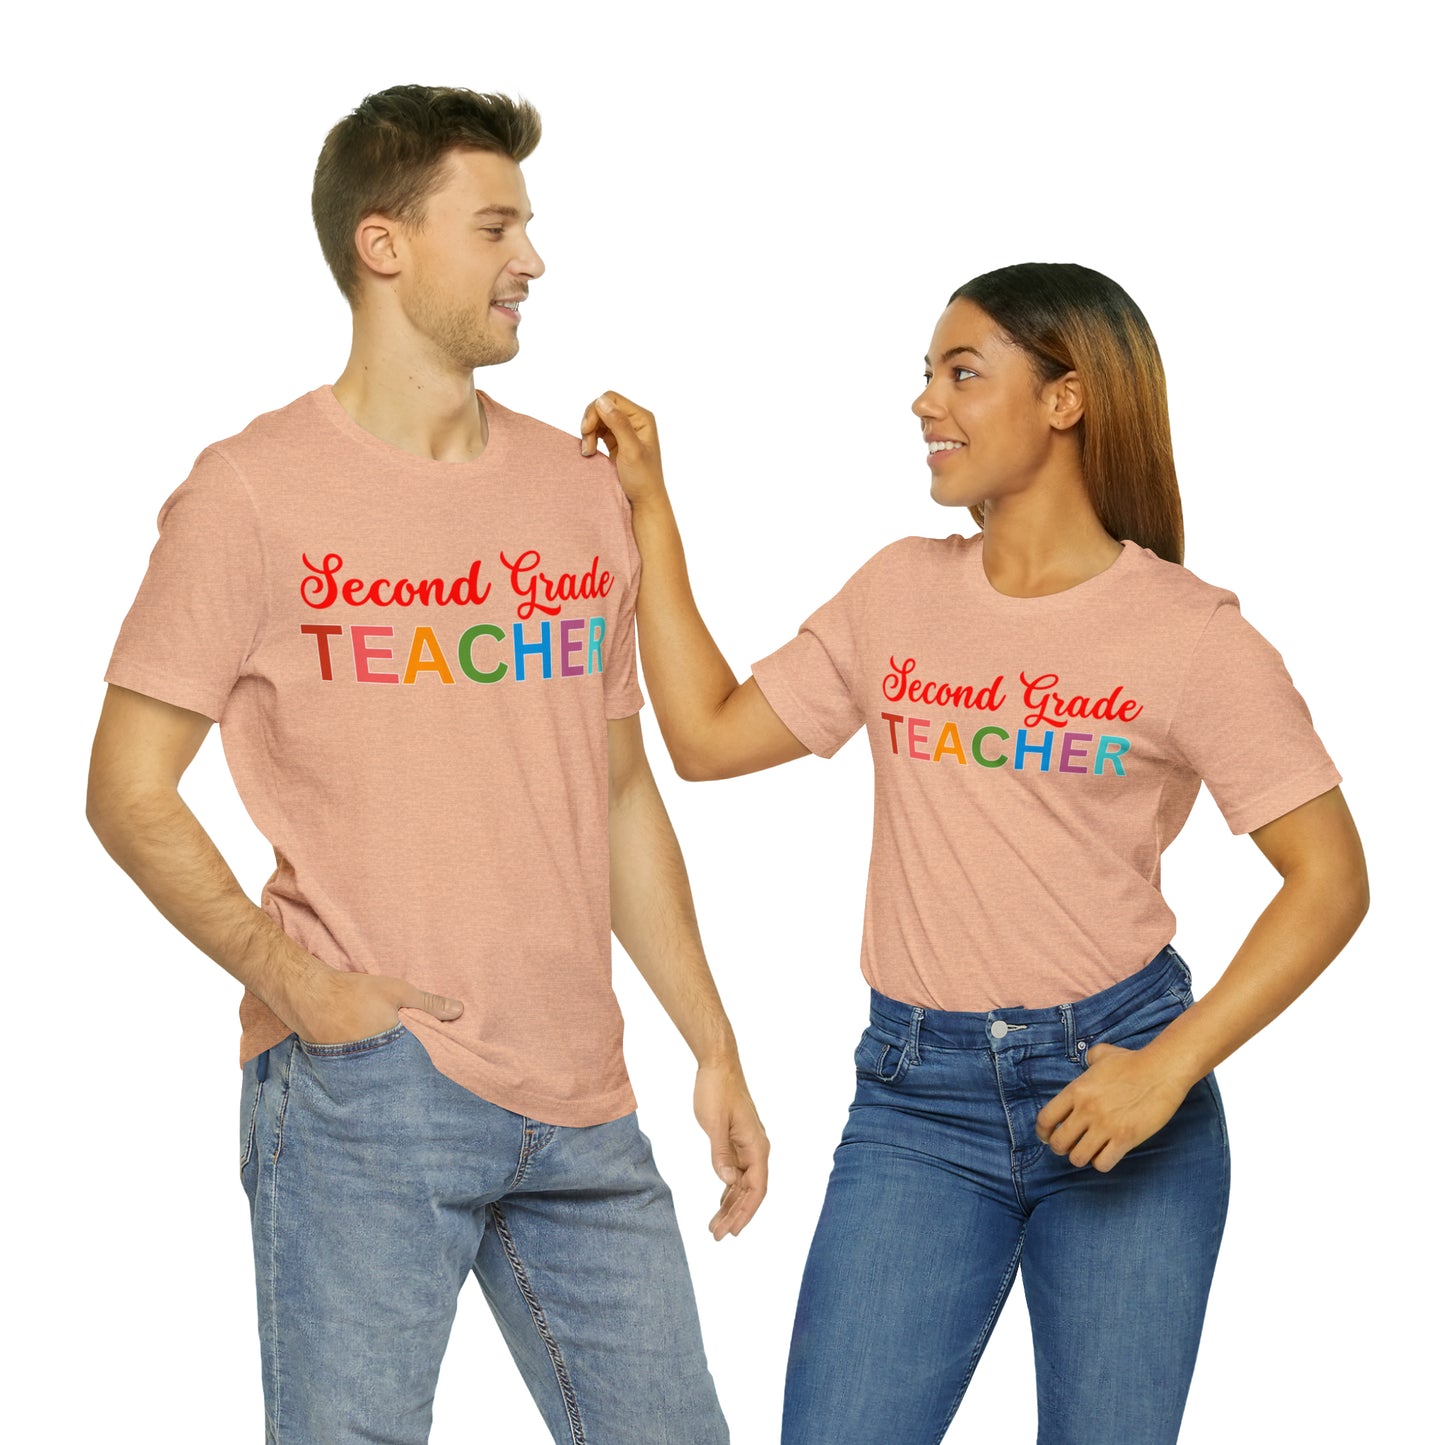 Second Grade Teacher Shirt, Teacher Shirt, Teacher Appreciation Gift for Teachers